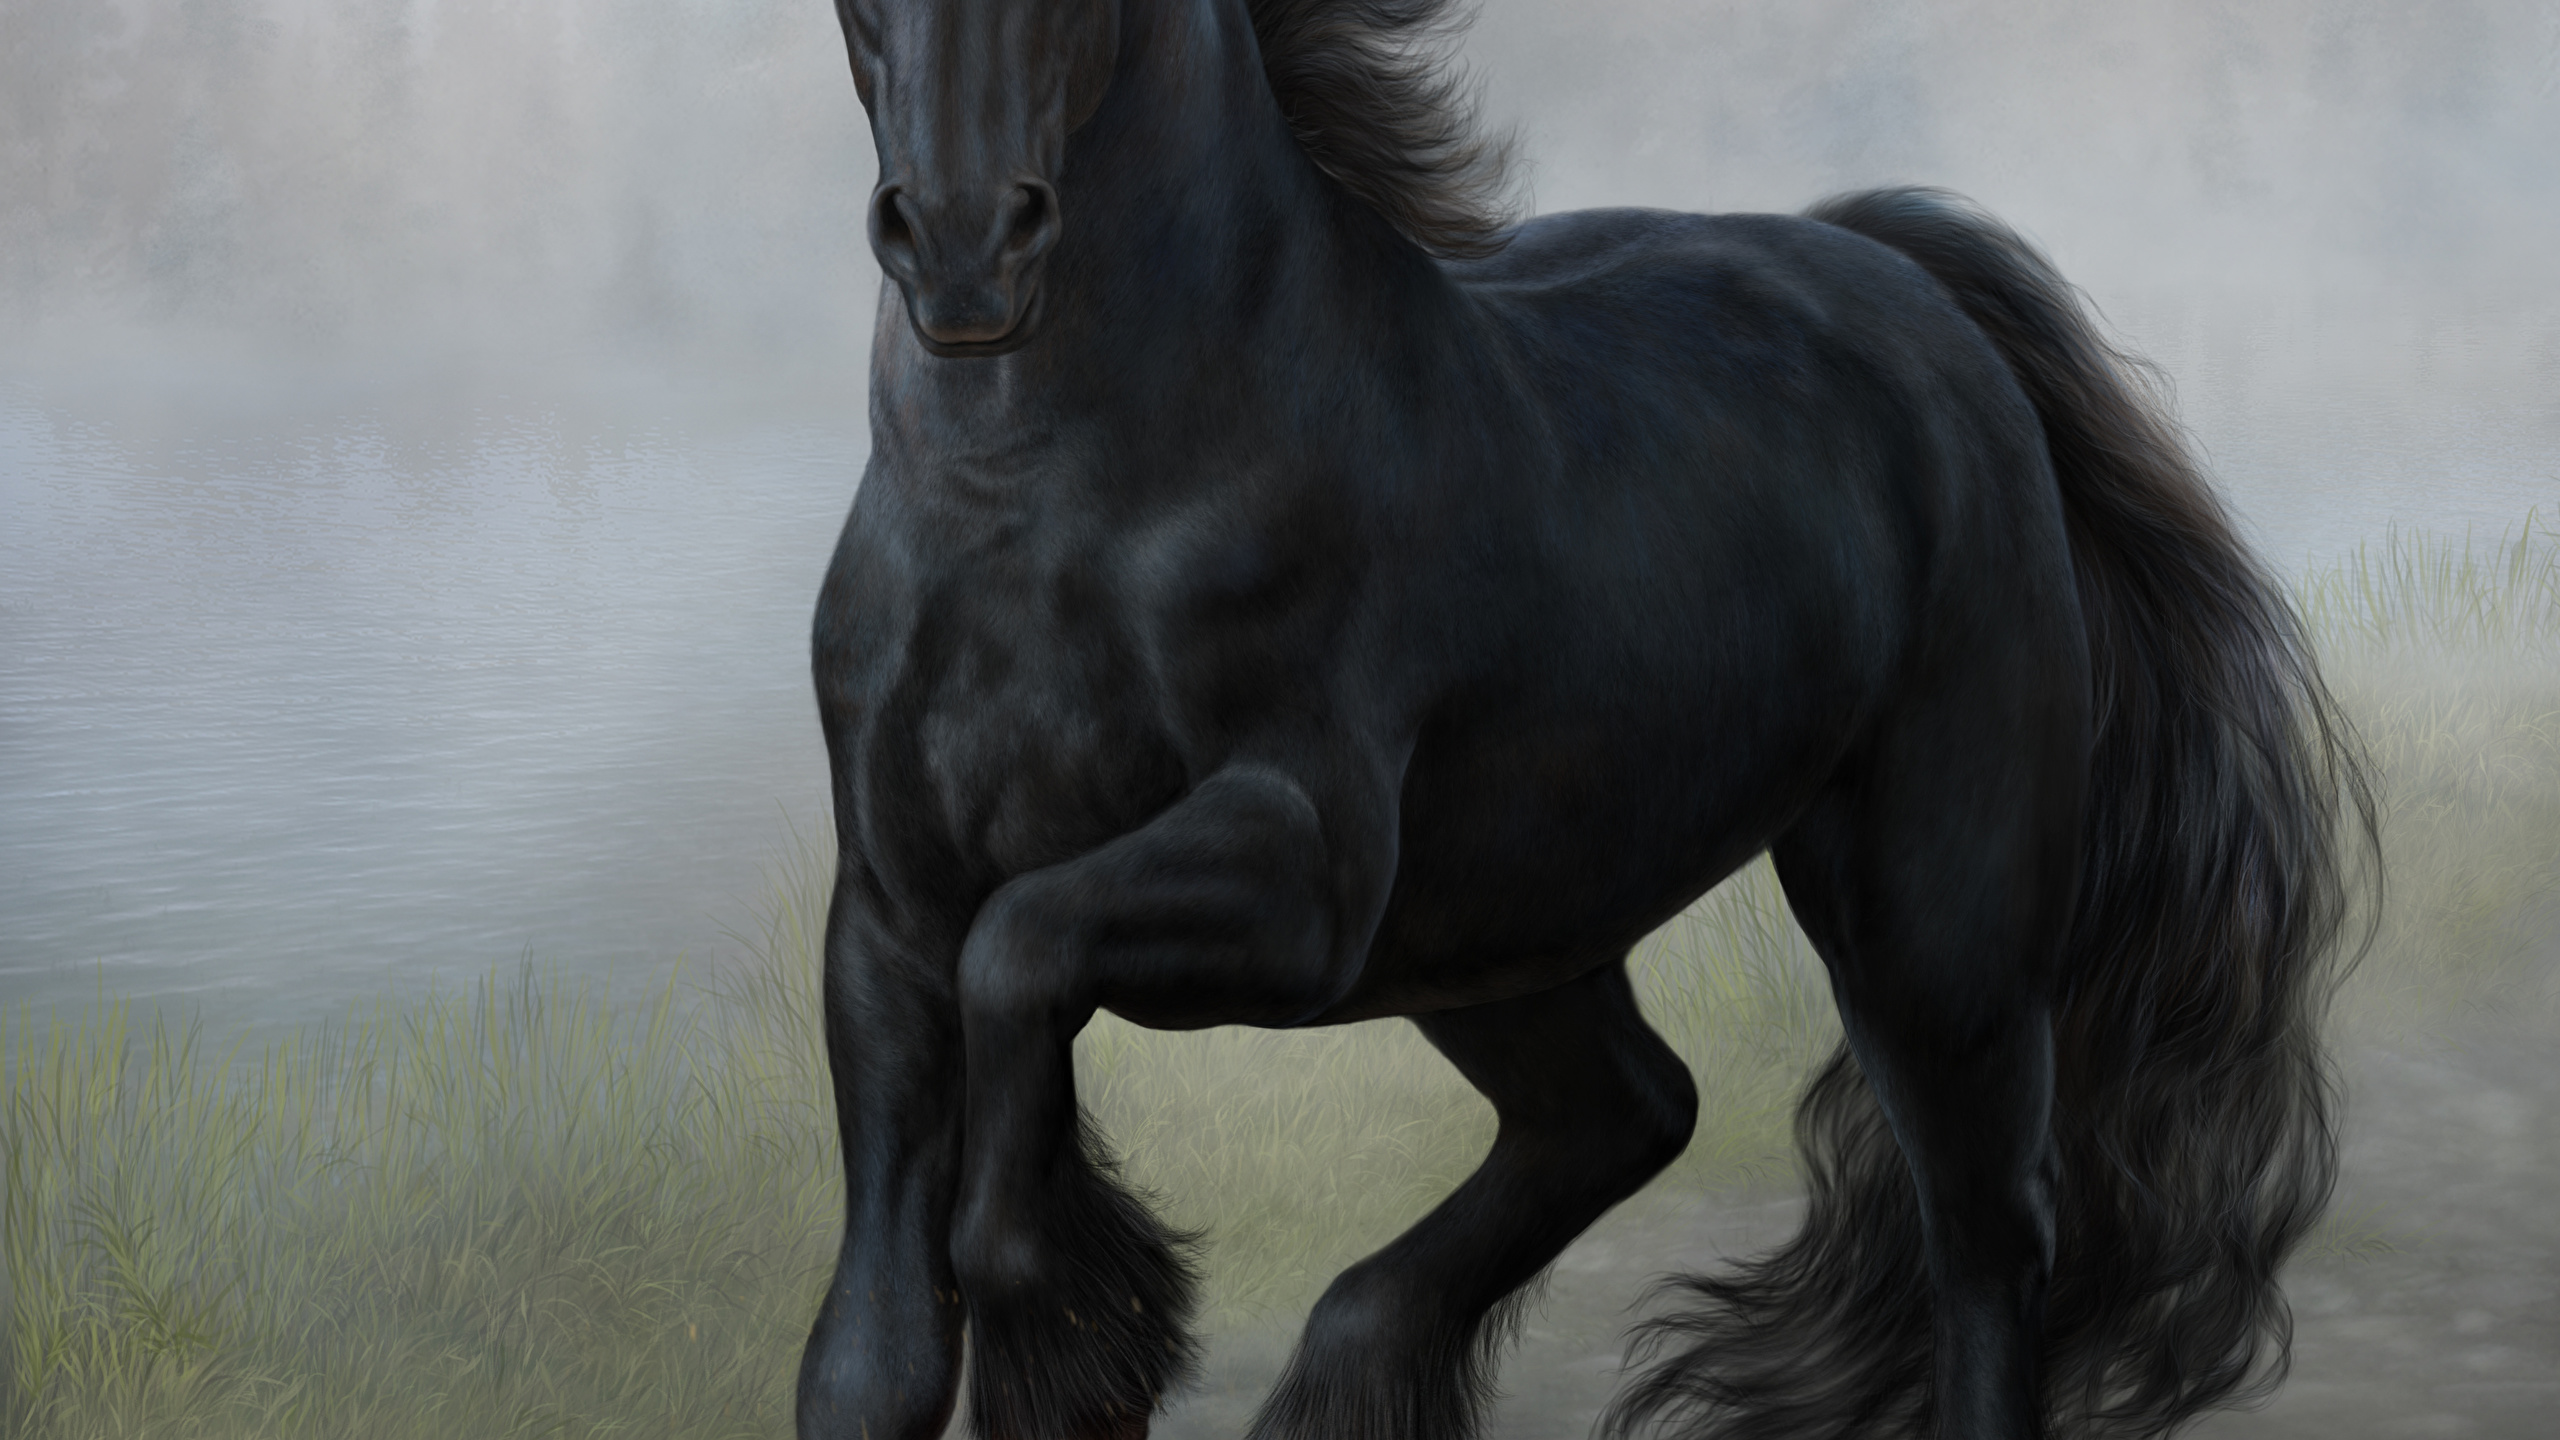 Papeis de parede 2560x1440 The Elder Scrolls V: Skyrim Cavalo Tenegrin Jogos  Fantasia baixar imagens